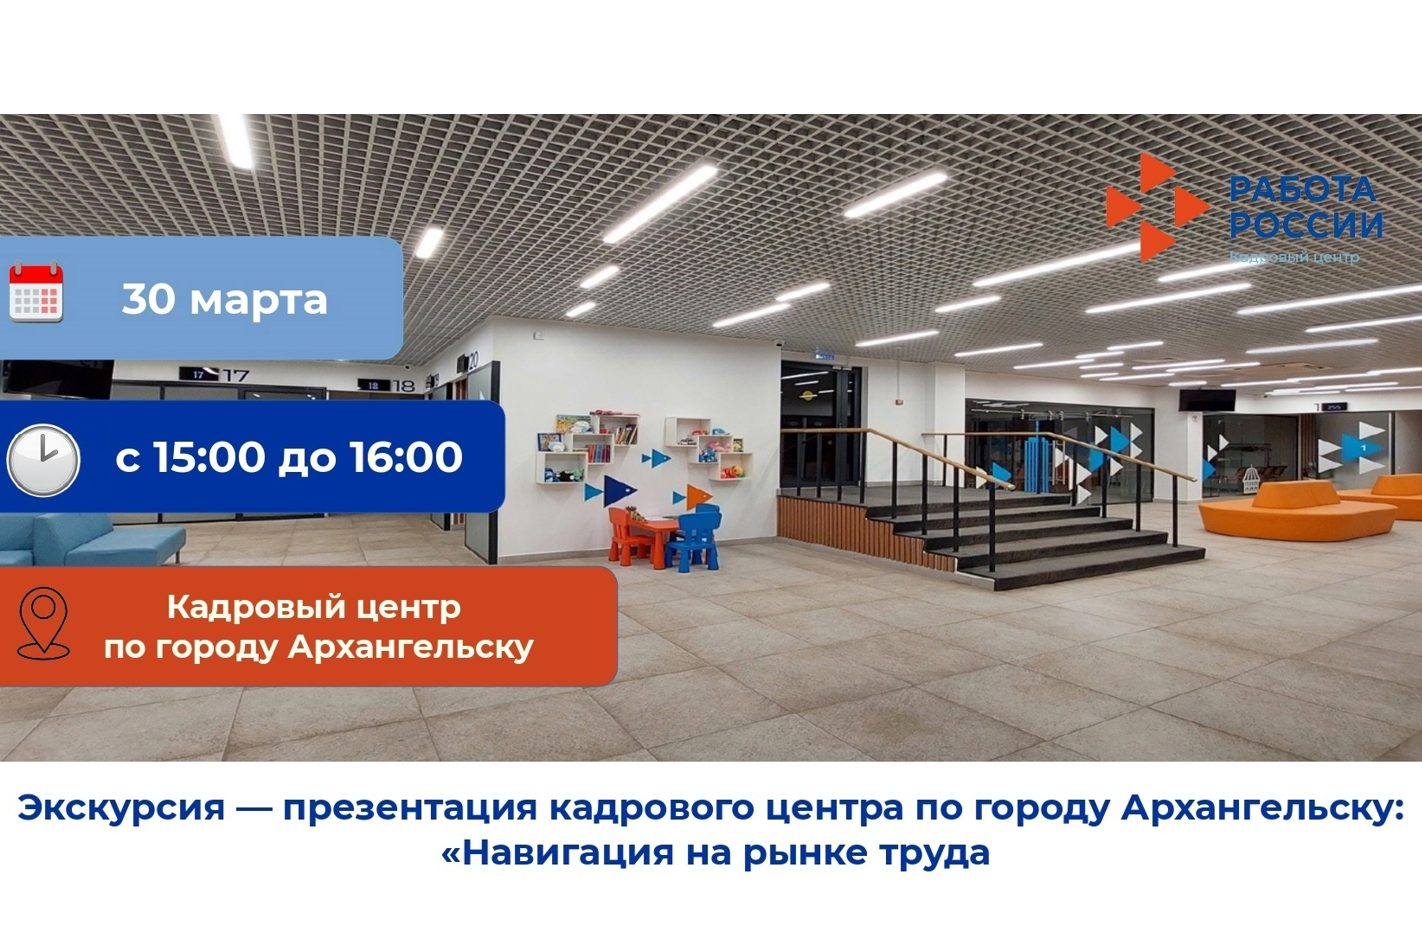 Навигация на рынке труда: в Архангельске состоится экскурсия-презентация кадрового центра